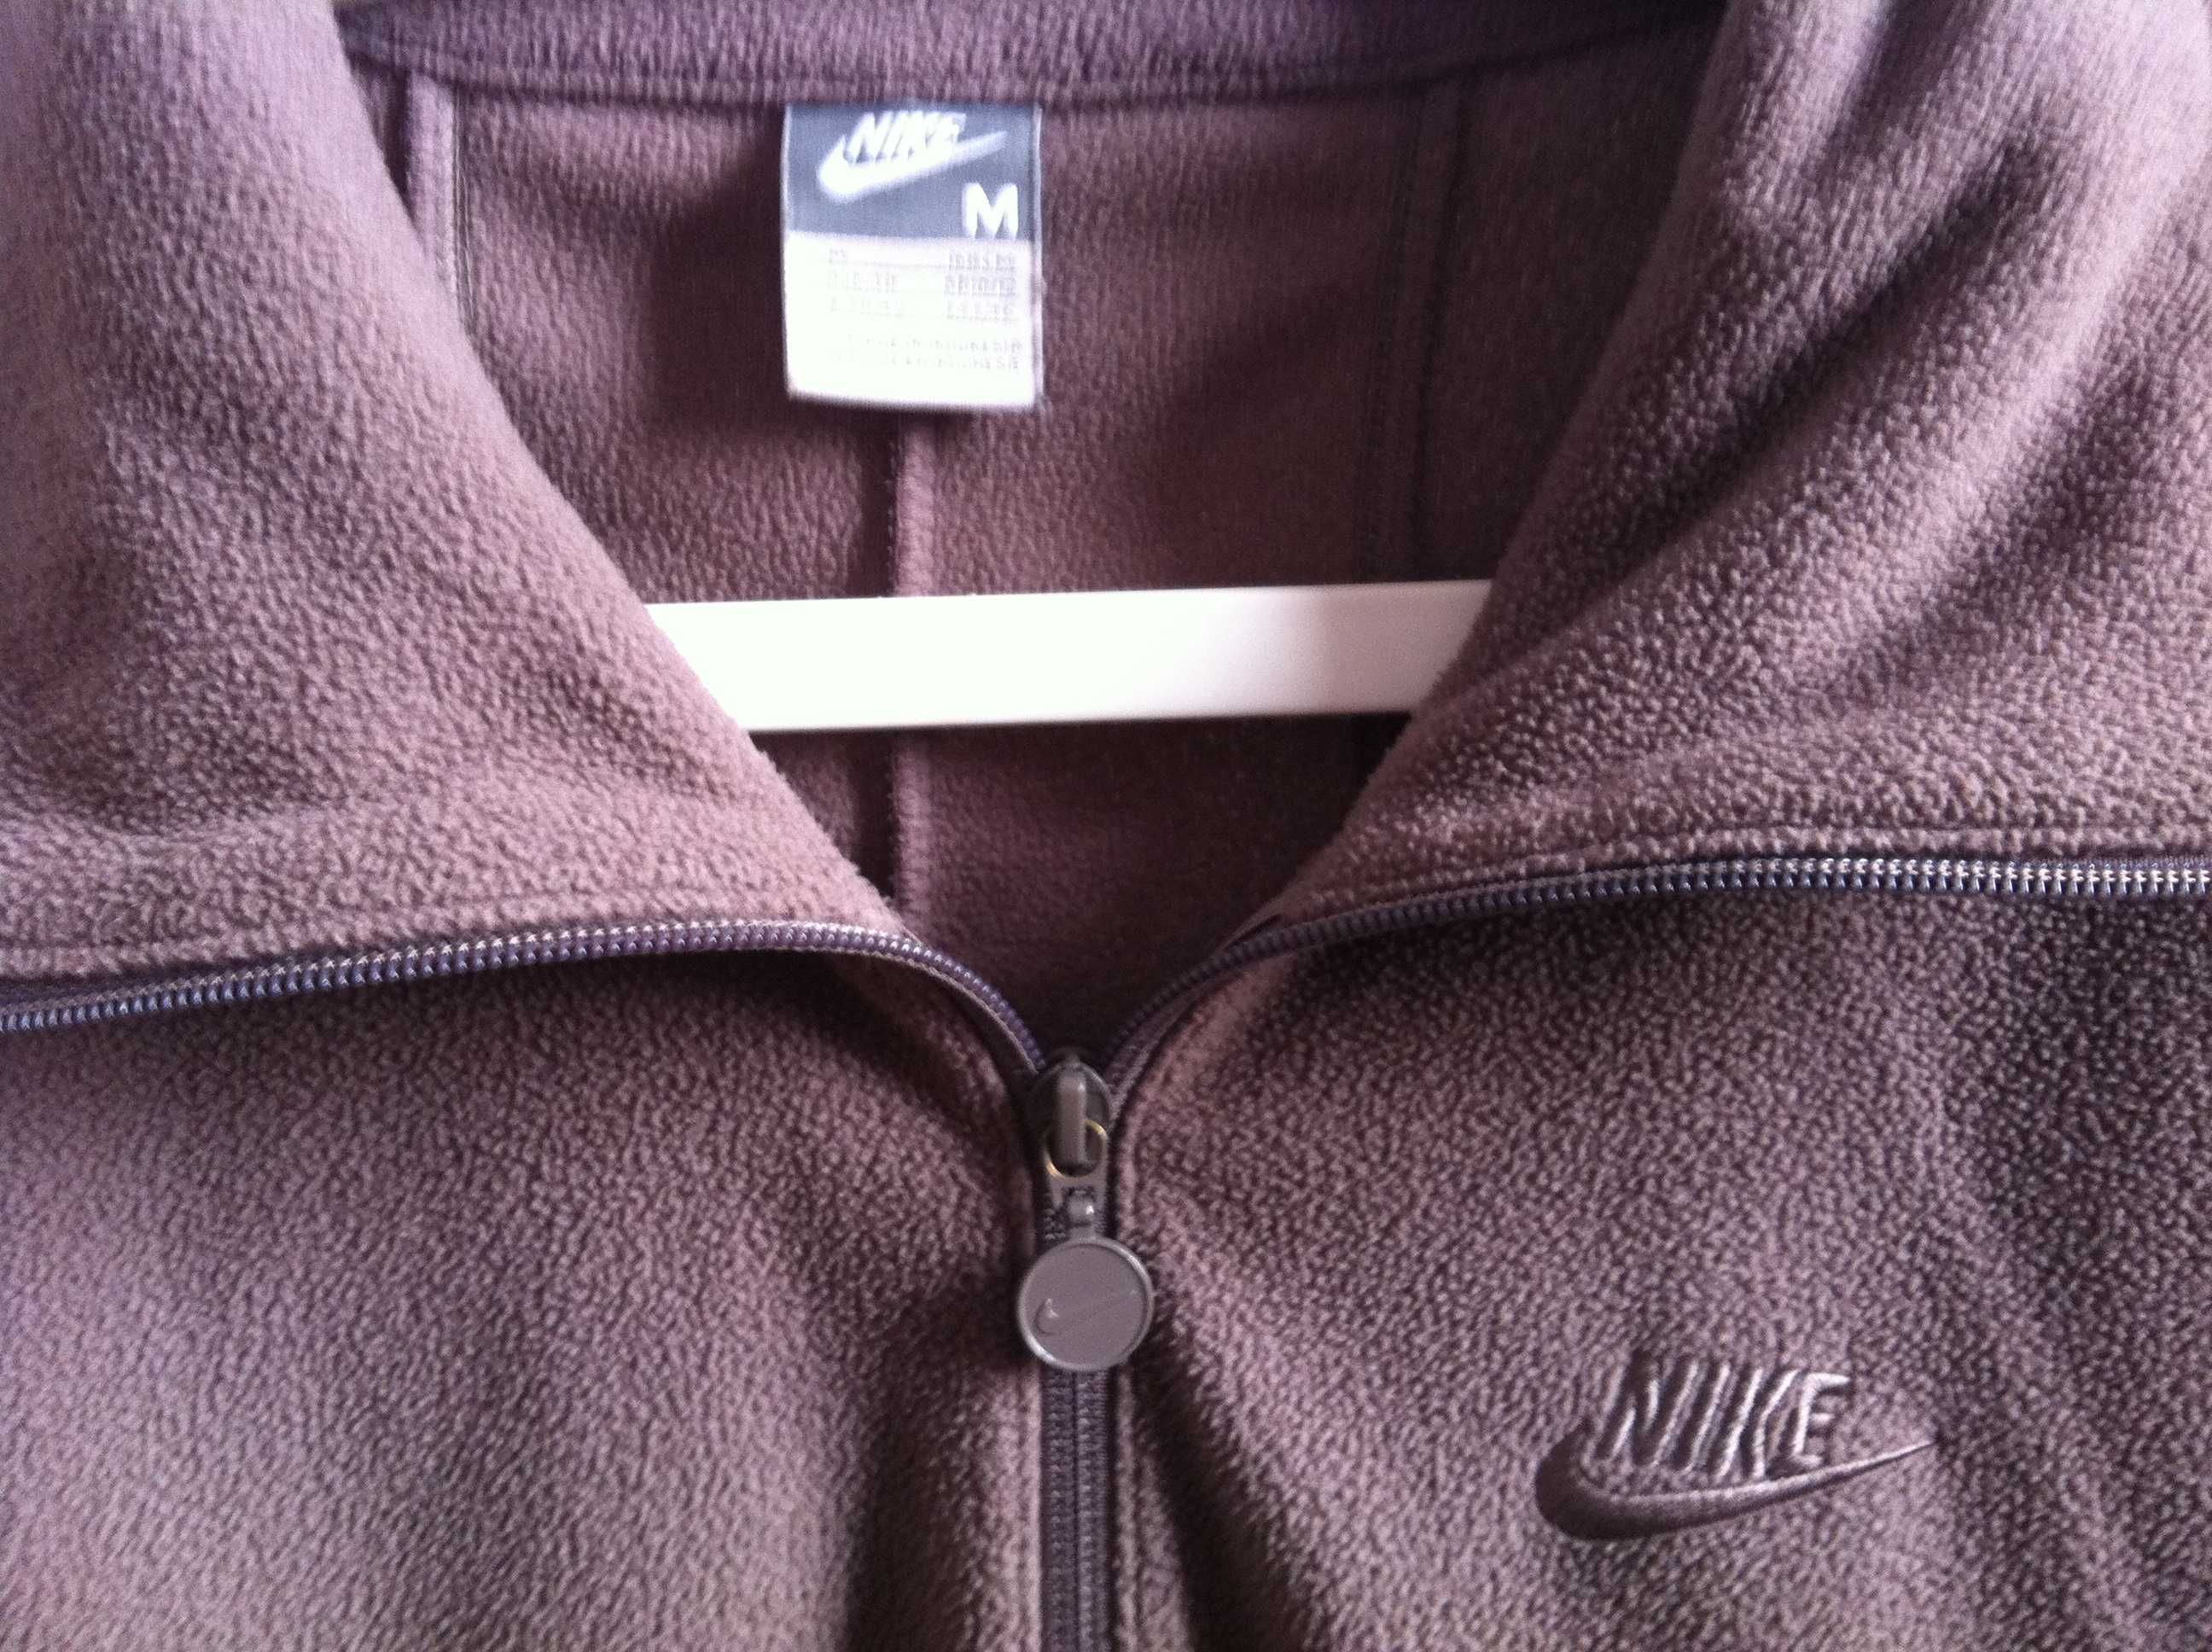 Bluza polar rozpinana Nike beż rozmiar M